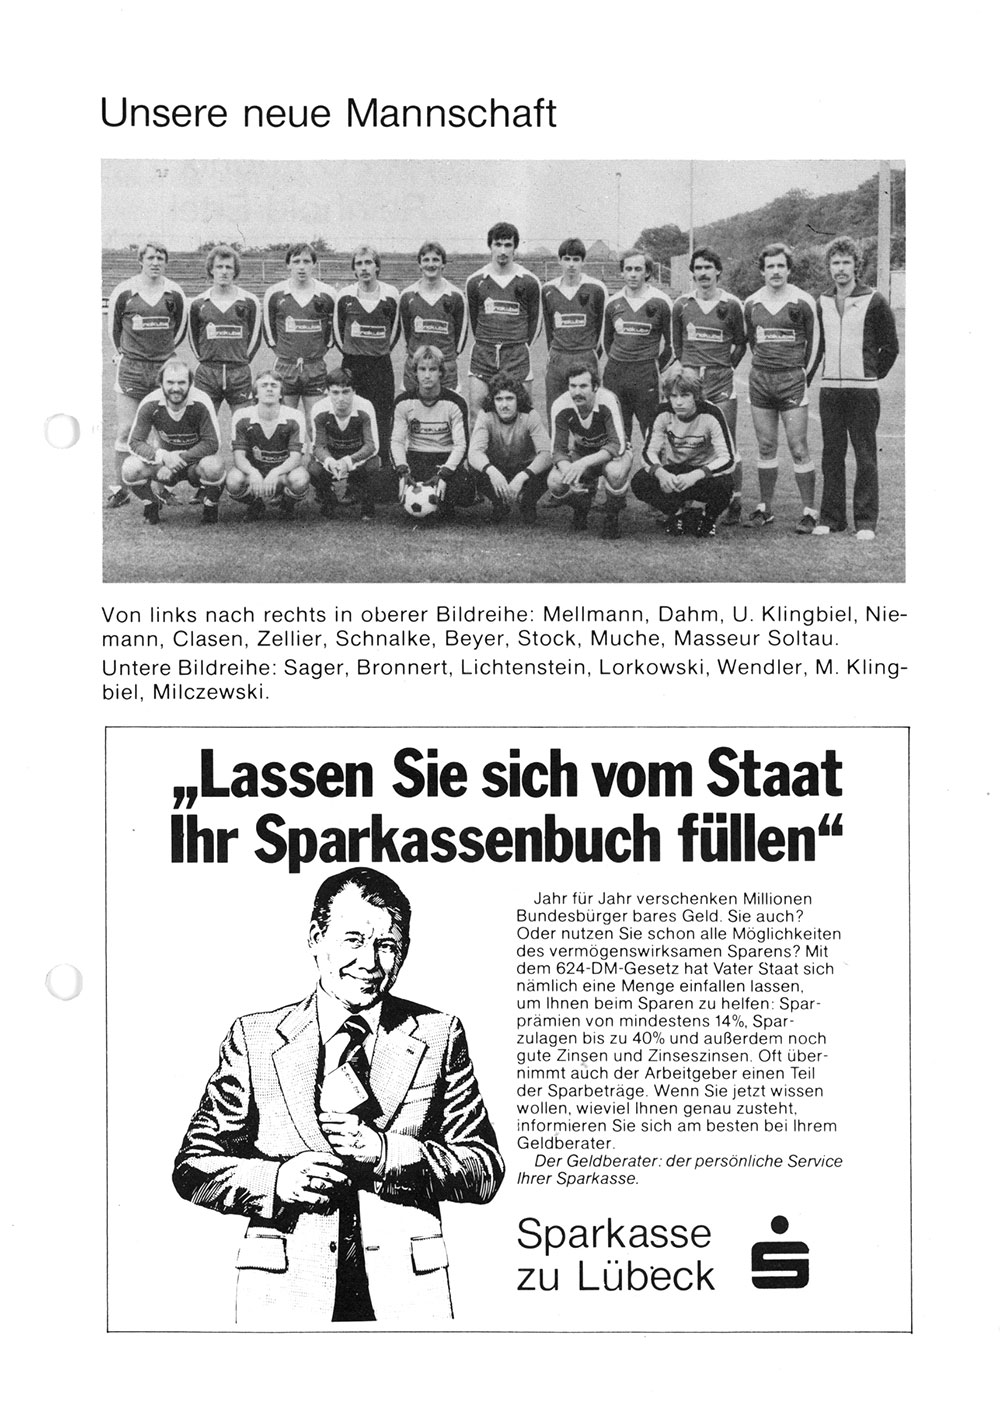 Der PHÖNIX Express v. 18.8.1979